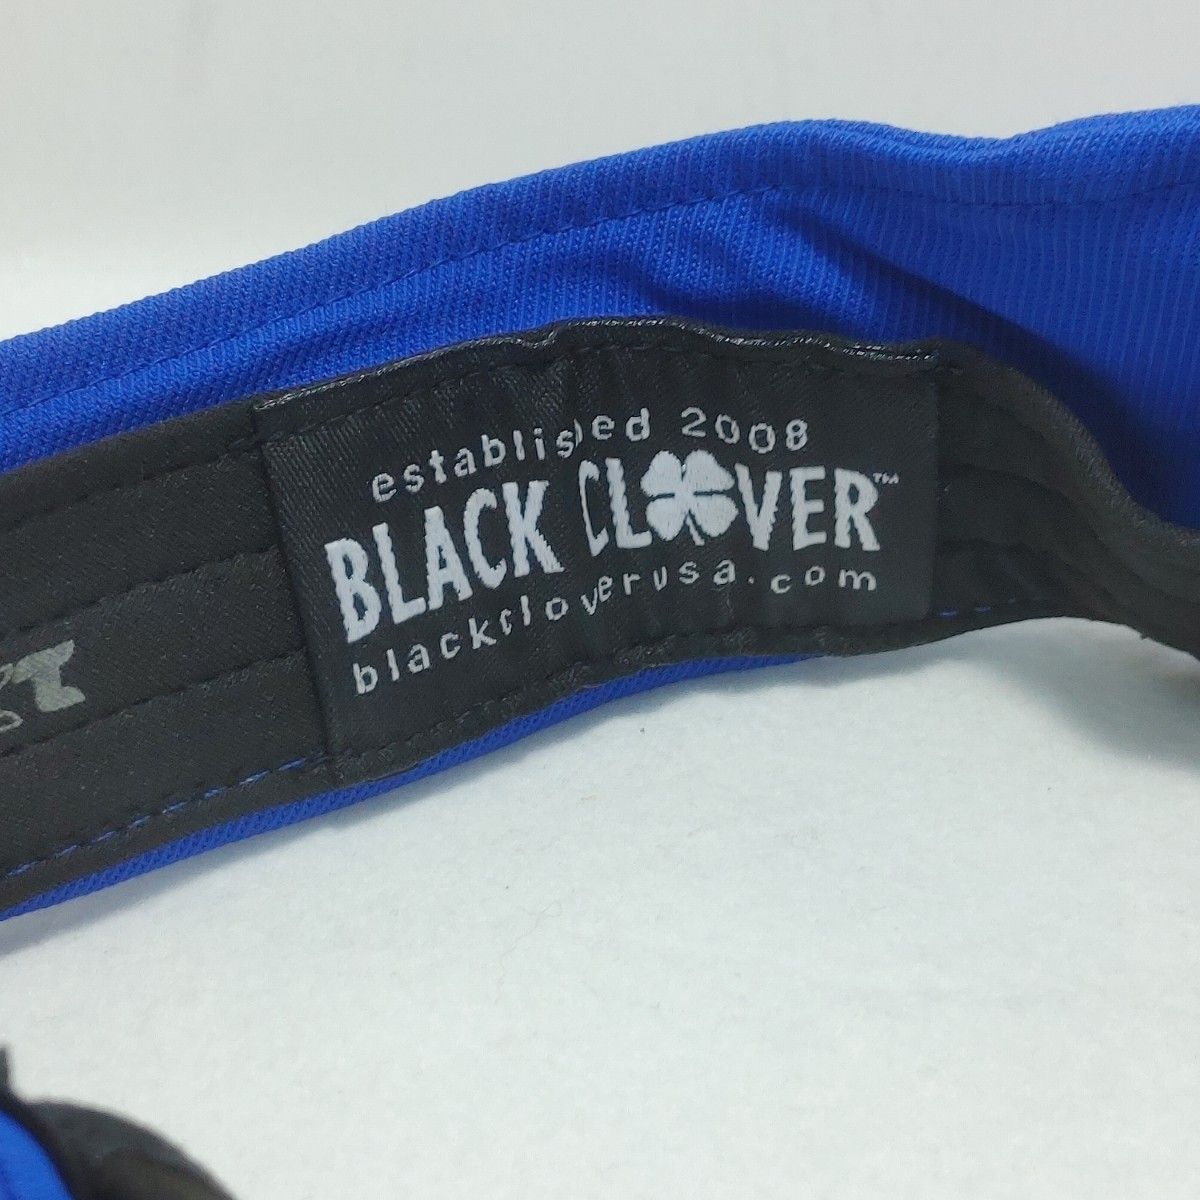 [USED] BLACK CLOVER サンバイザー ブルー(RED/ROYAL) フリーサイズ(約55～57㎝)【0309】